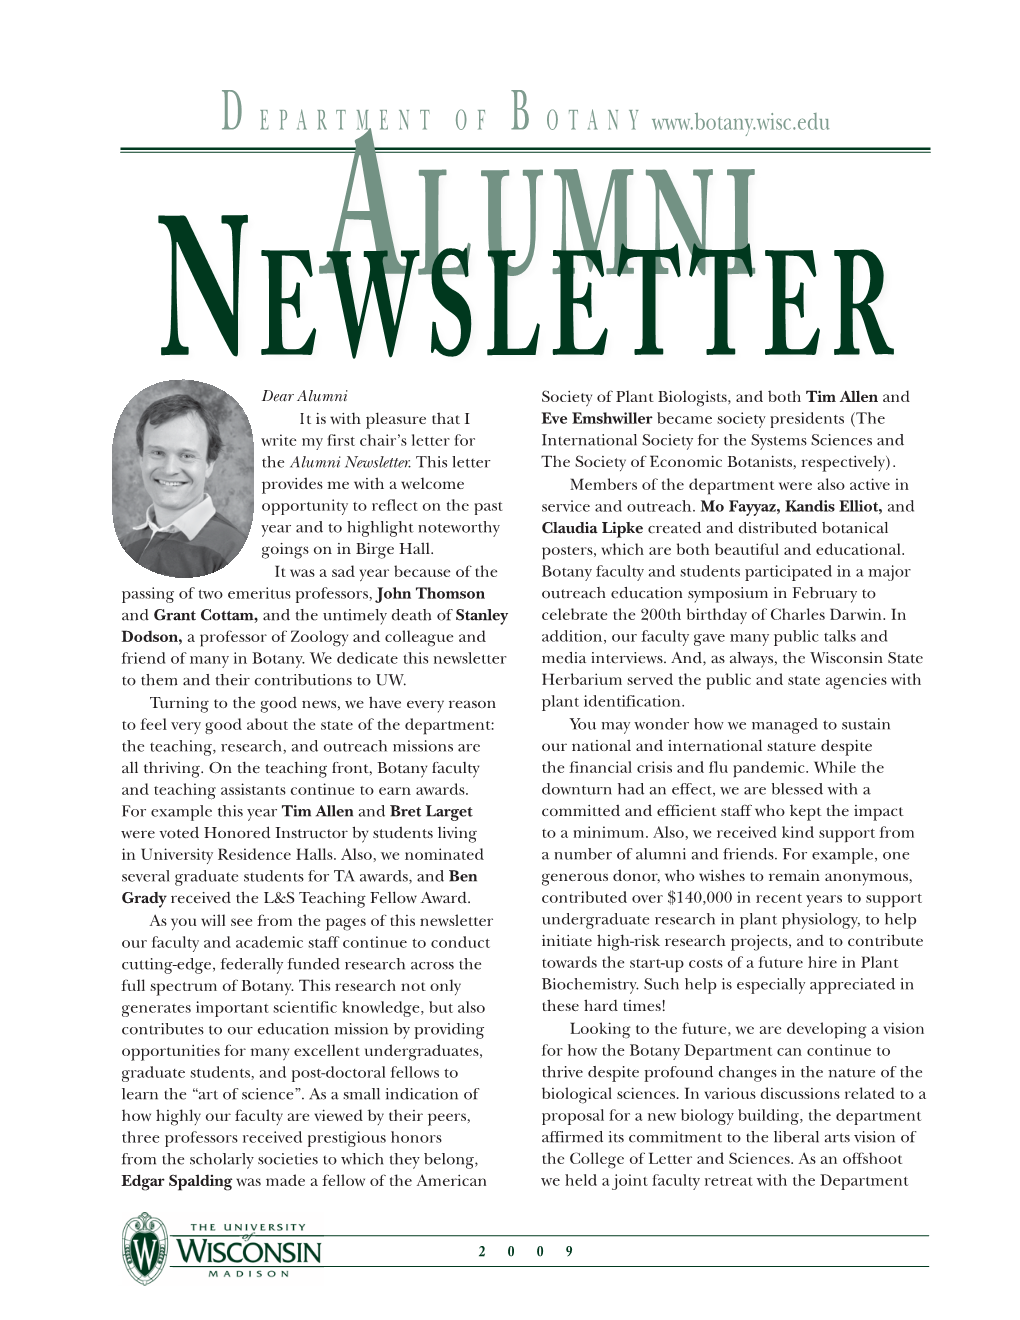 2009 Alumni Newsletter